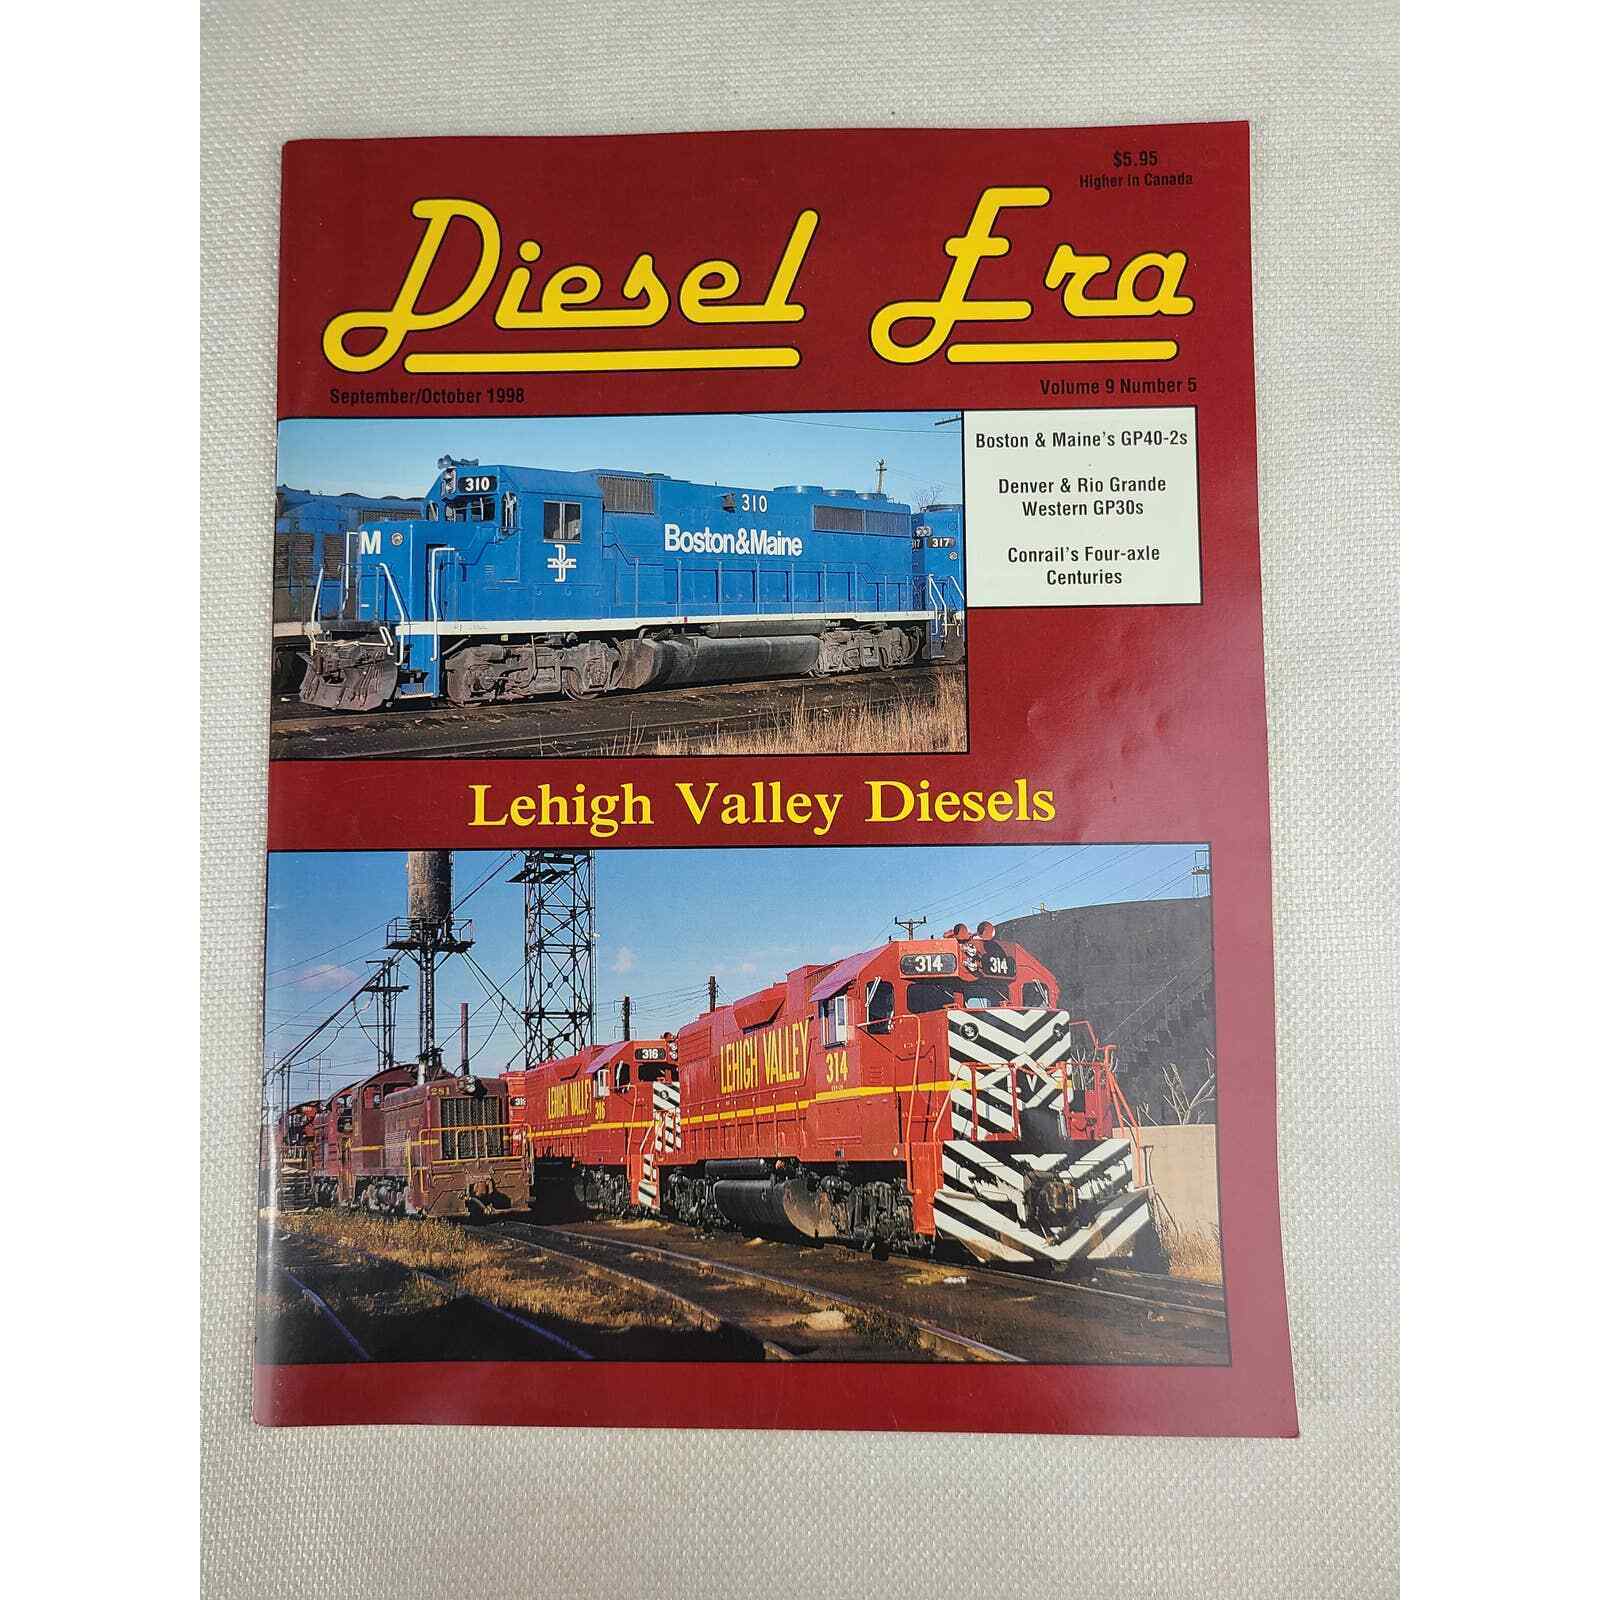 Diesel Era Magazine Volume 9 Number 5 September October 1998 - Locomotives